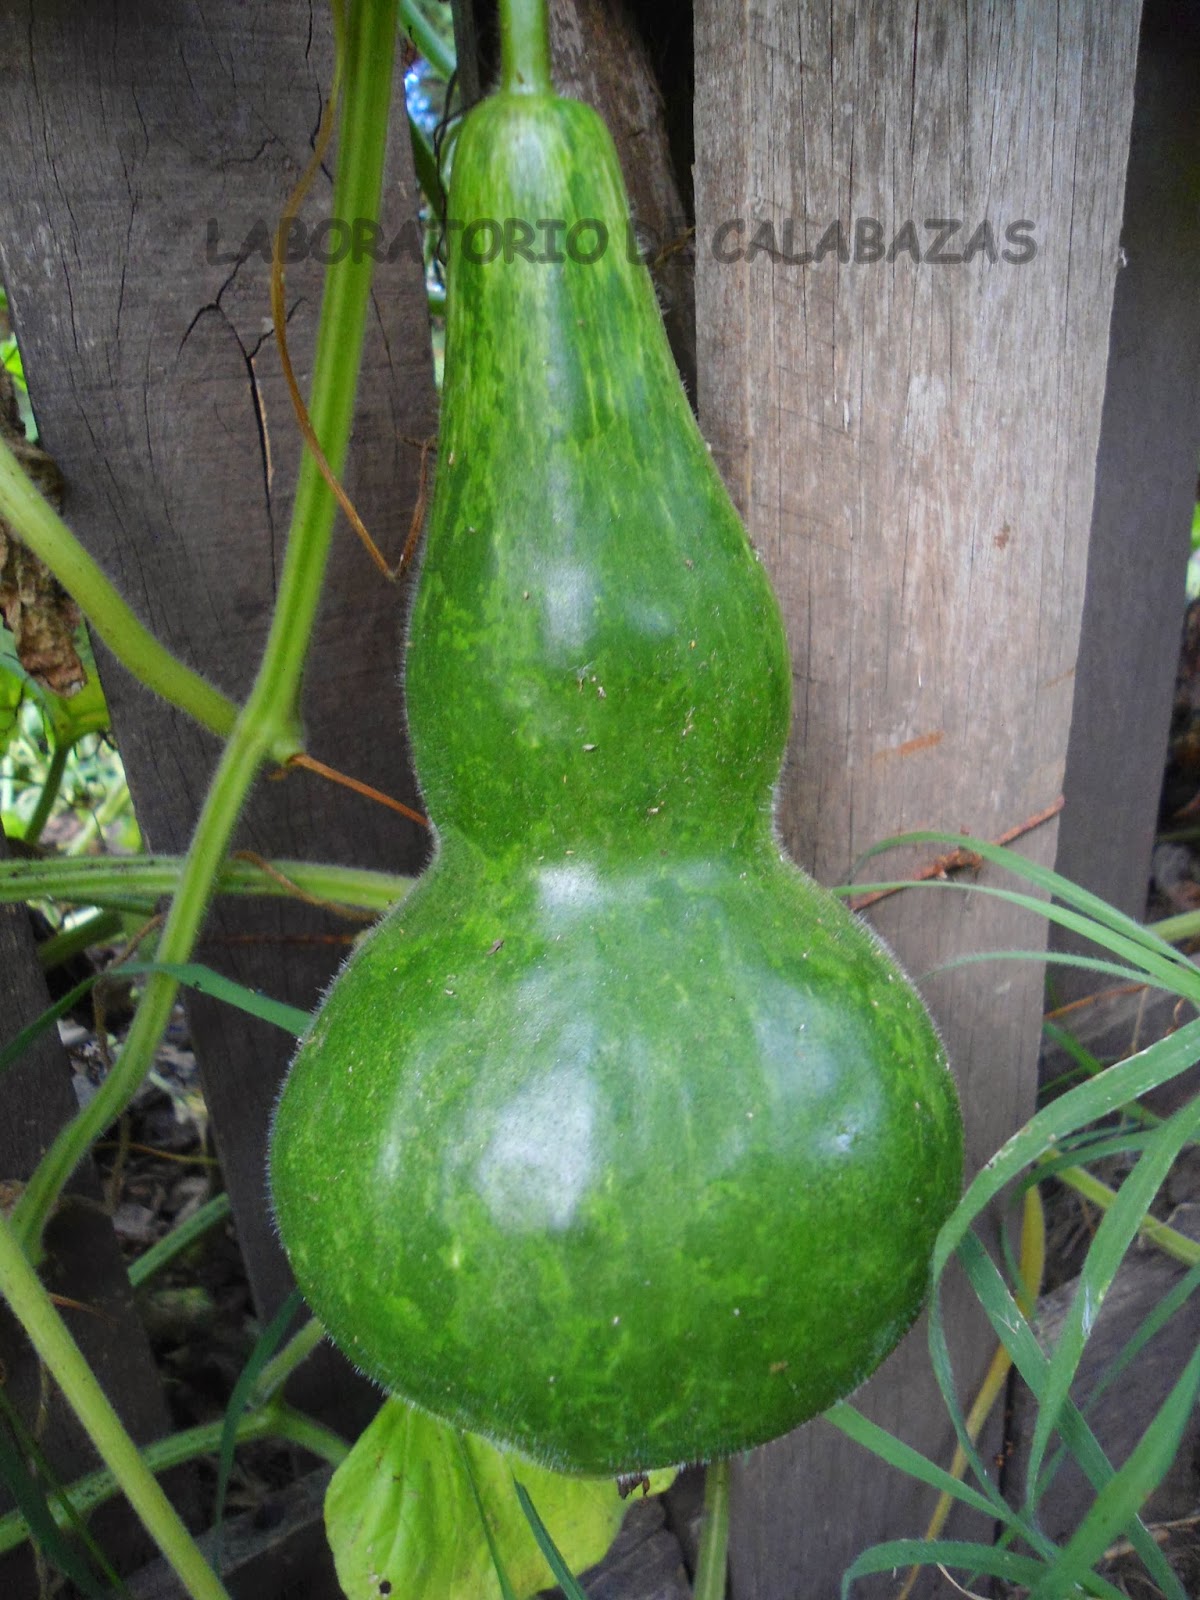 LABORATORIO DE CALABAZAS: Calabaza Mate (Lagenaria siceraria)